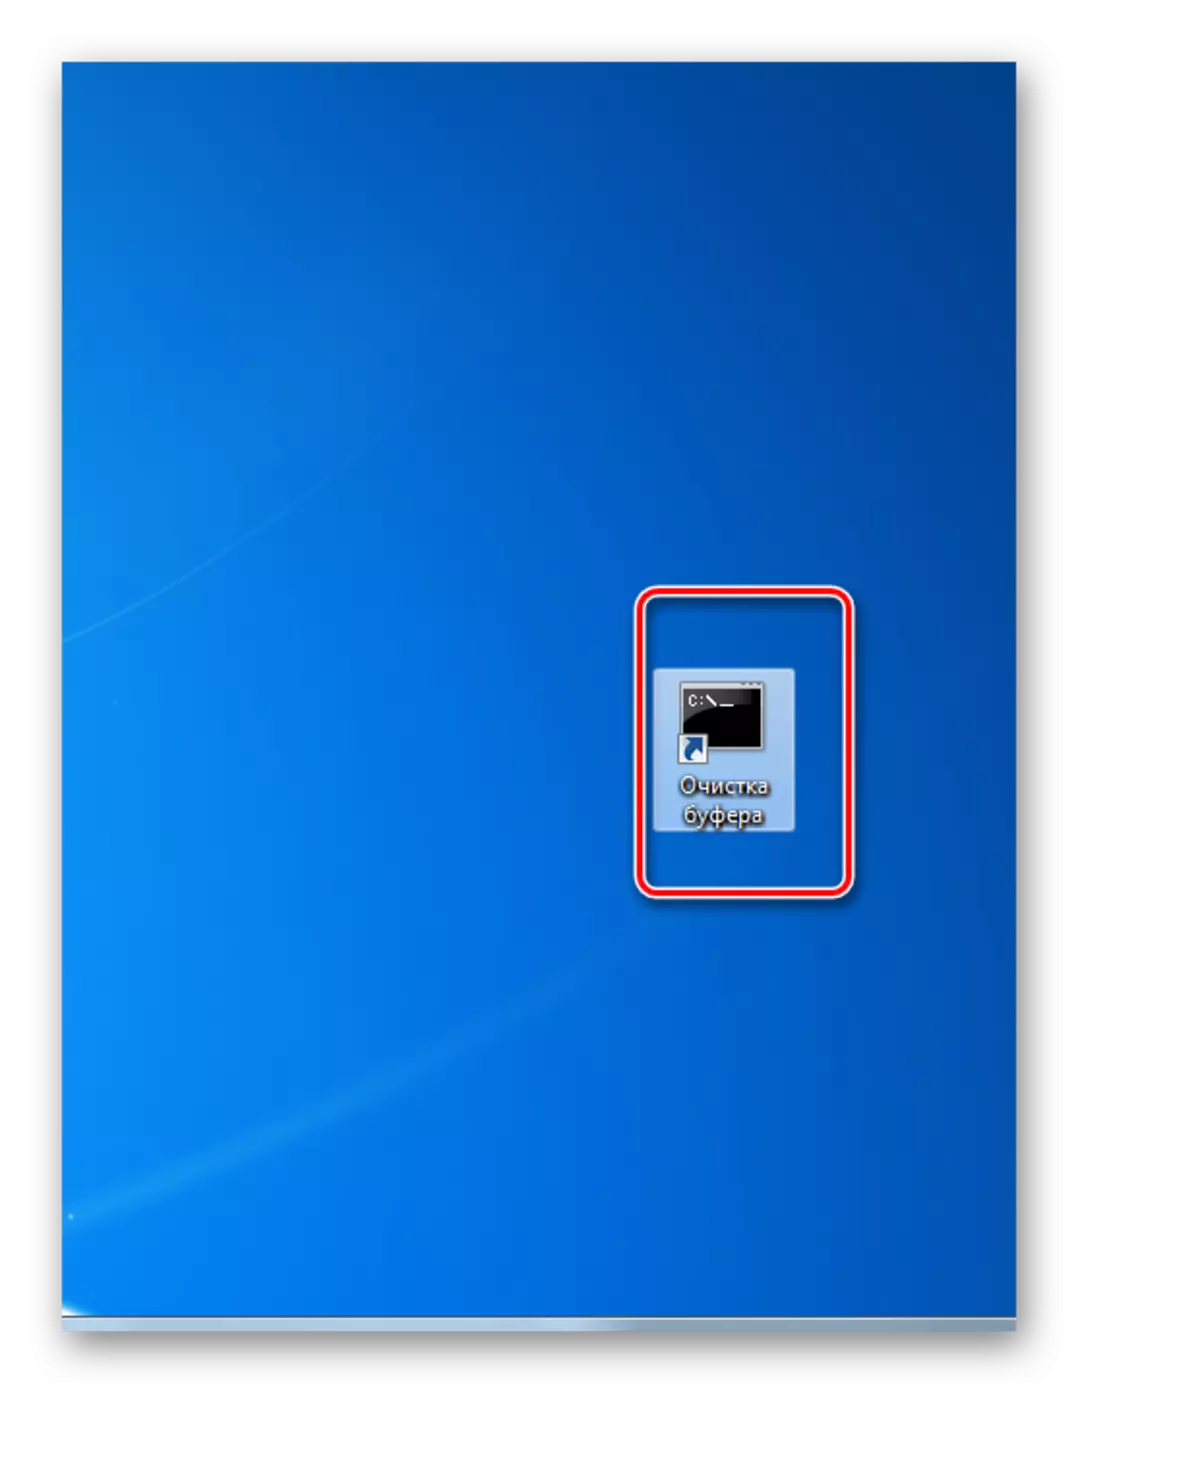 Lafen Botzen Bufferaustausch andeems Dir op der Ofkiirzung um Desktop an Windows 7 klickt